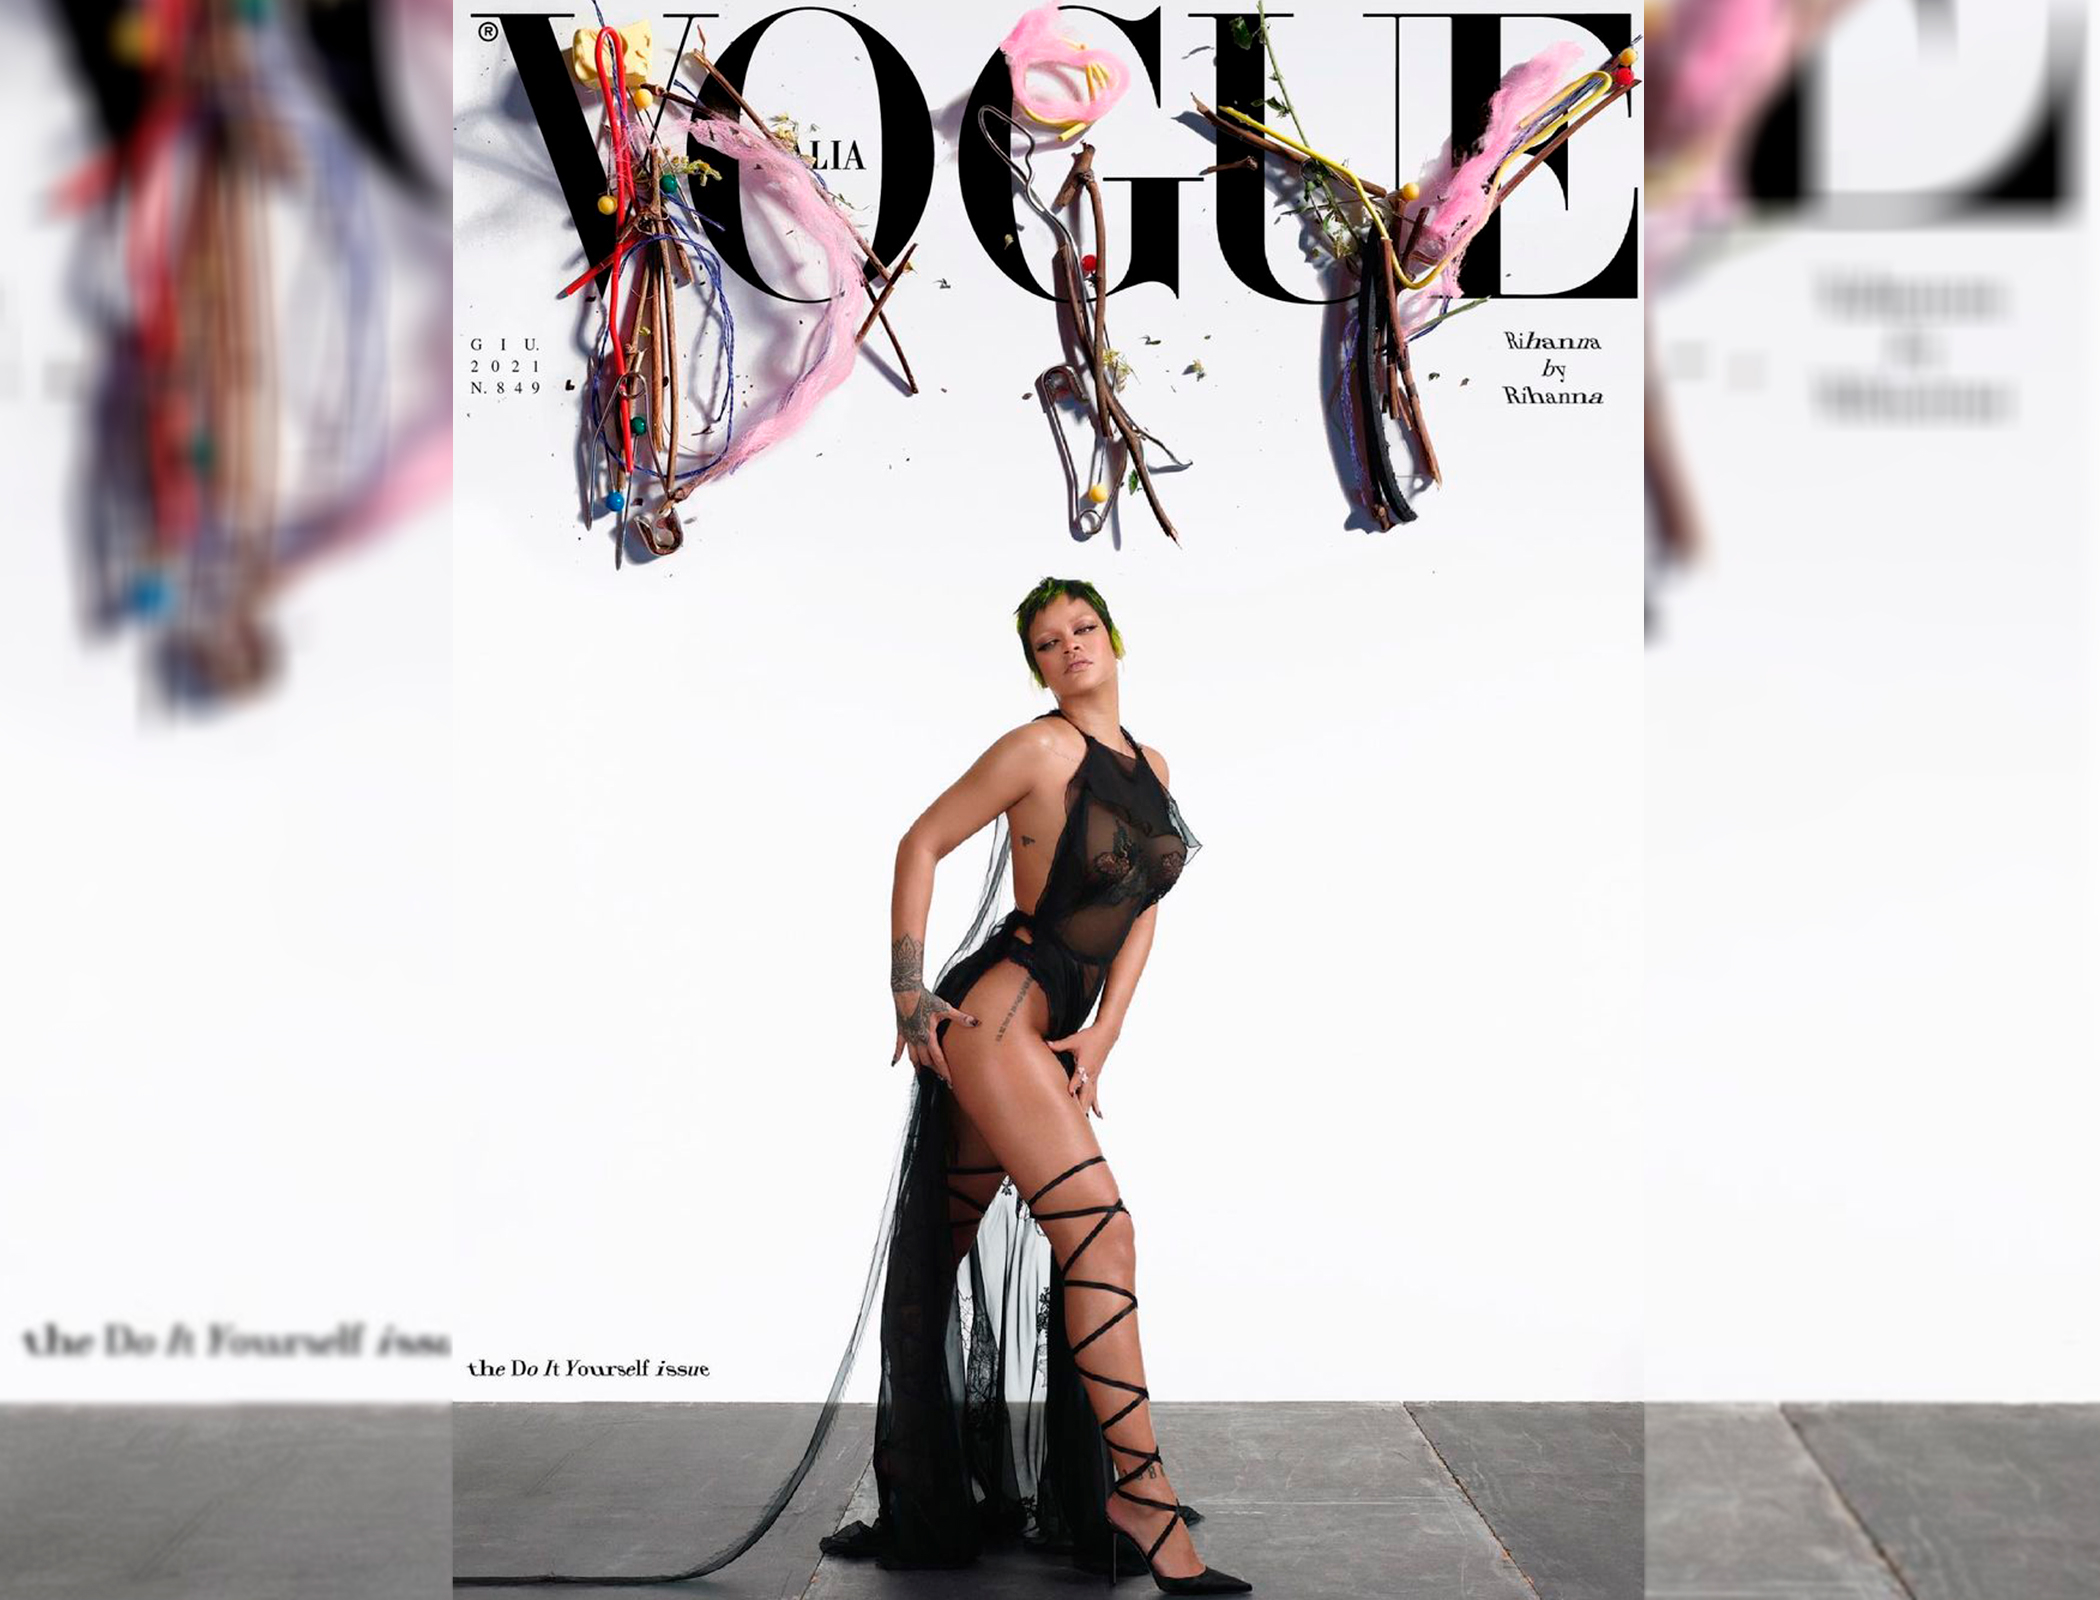 Рианна попала на обложку Vogue в полупрозрачном платье - ФОТО